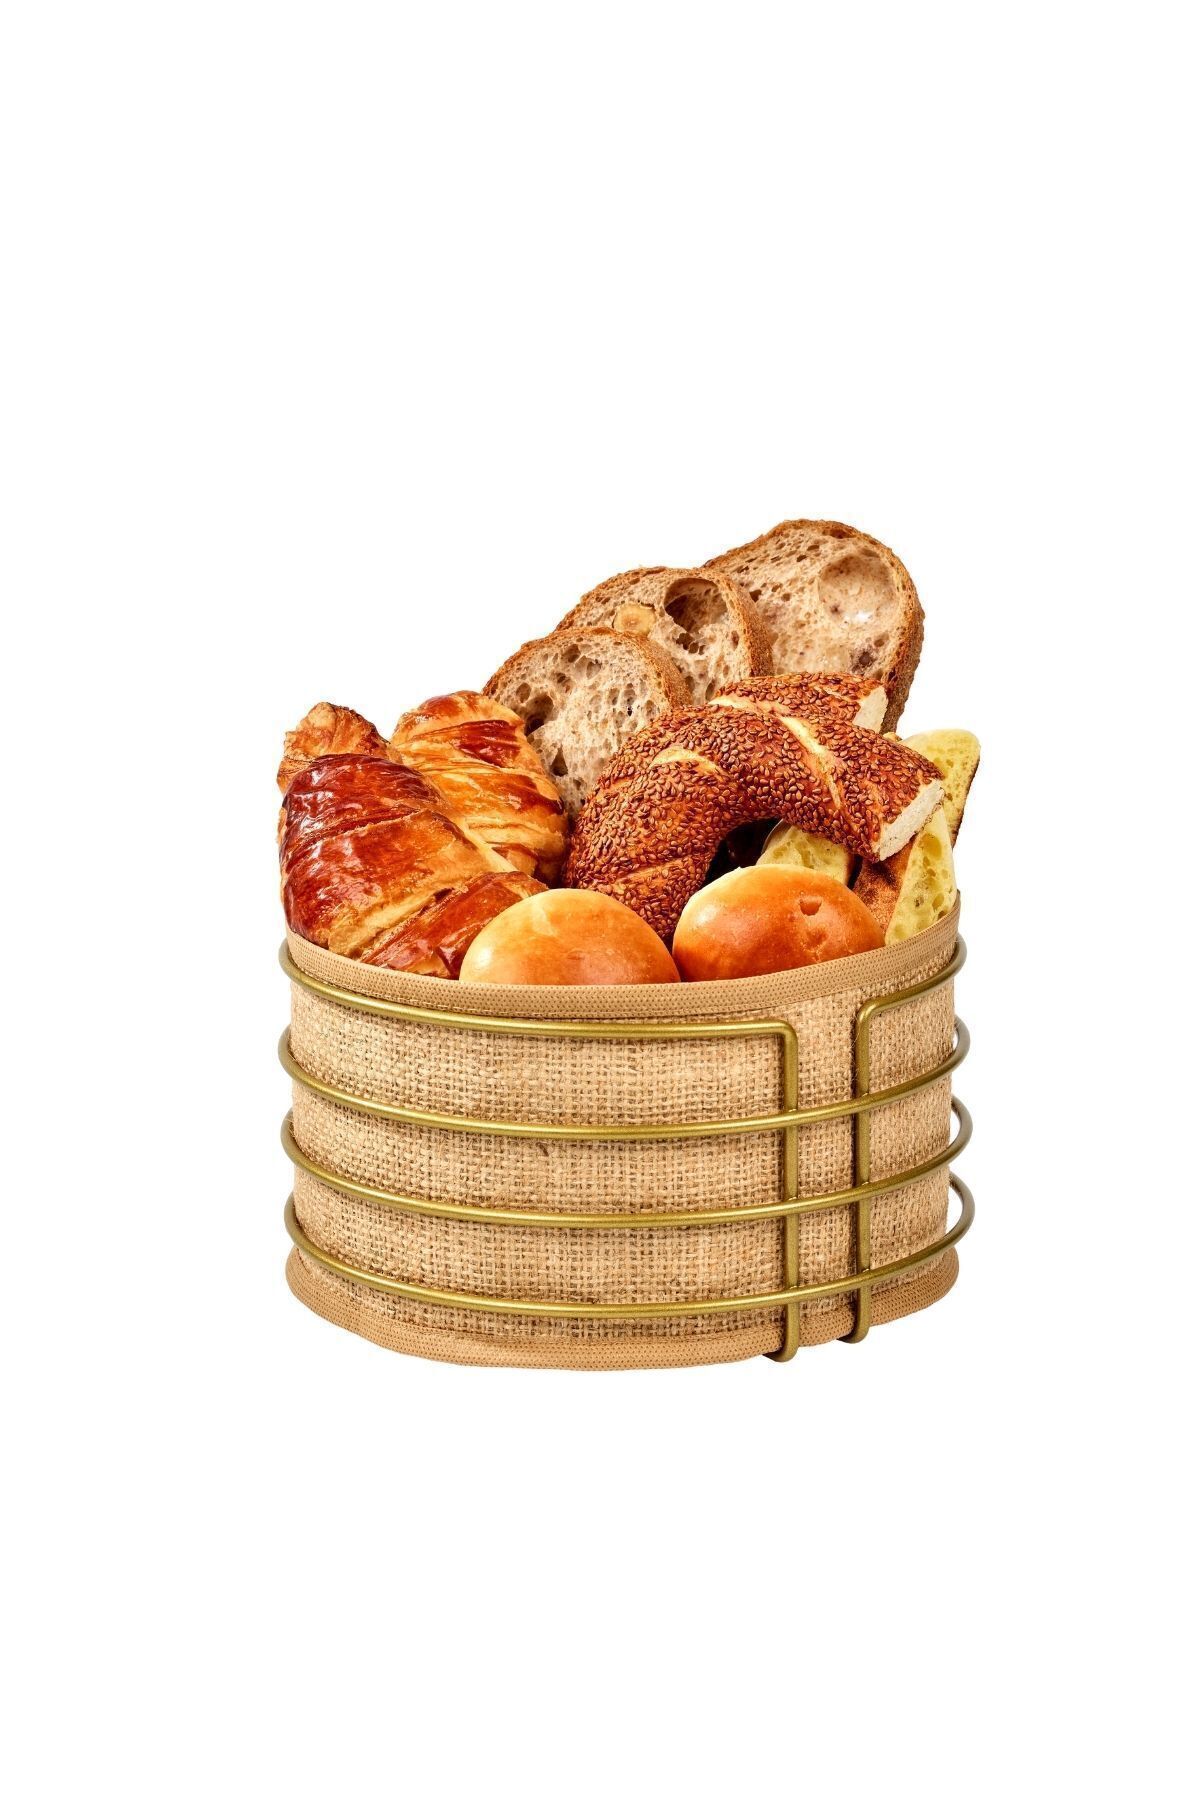 Edora Home Gold Yuvarlak Ekmek Sepeti Jüt Kumaş Bezi, Renkli Sunum Sepet Ekmeklik - Çok Amaçlı Metal Paslanmaz